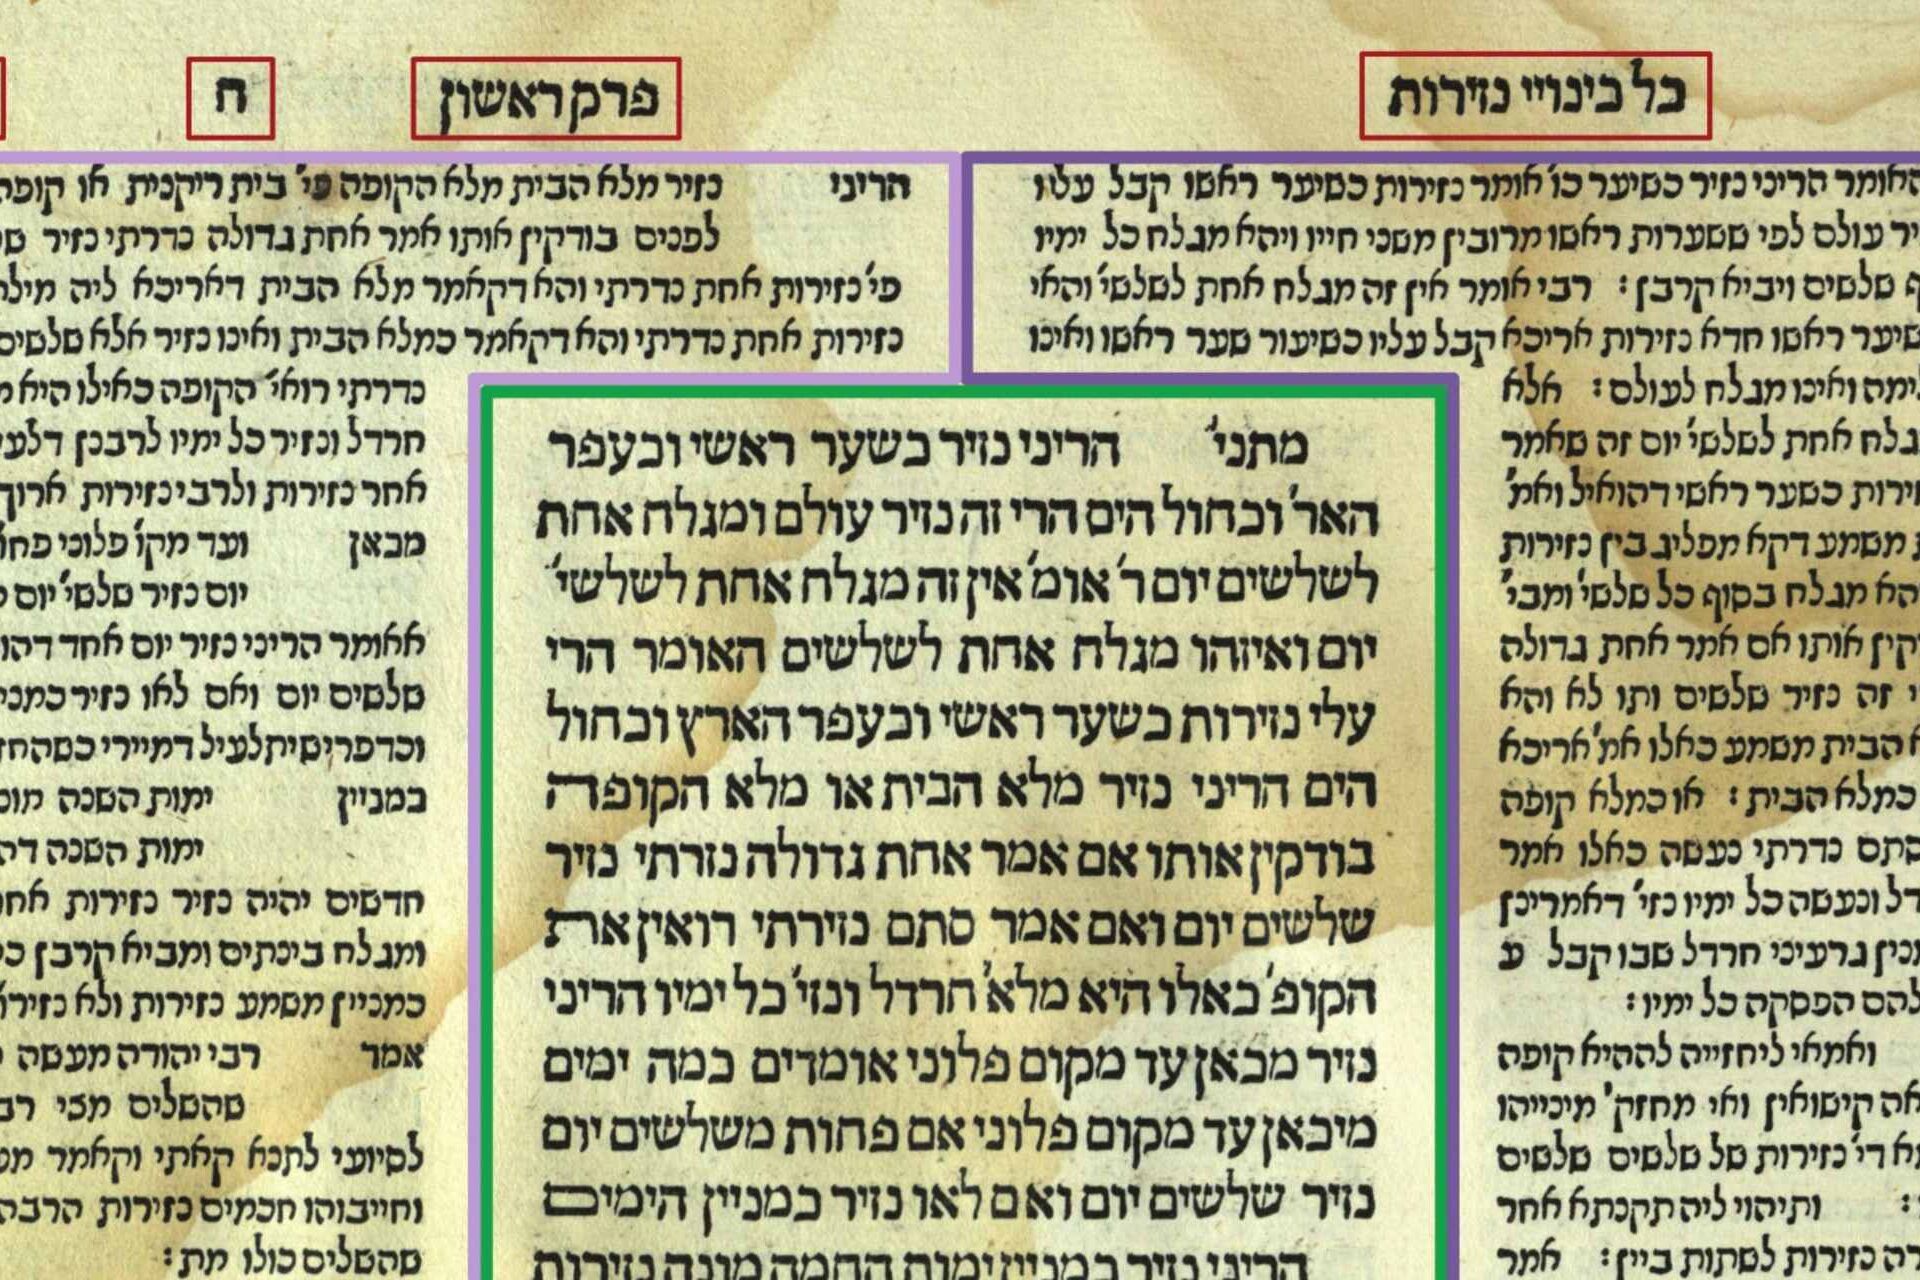 Uma imagem do Talmud judaico com os comentários nas margens